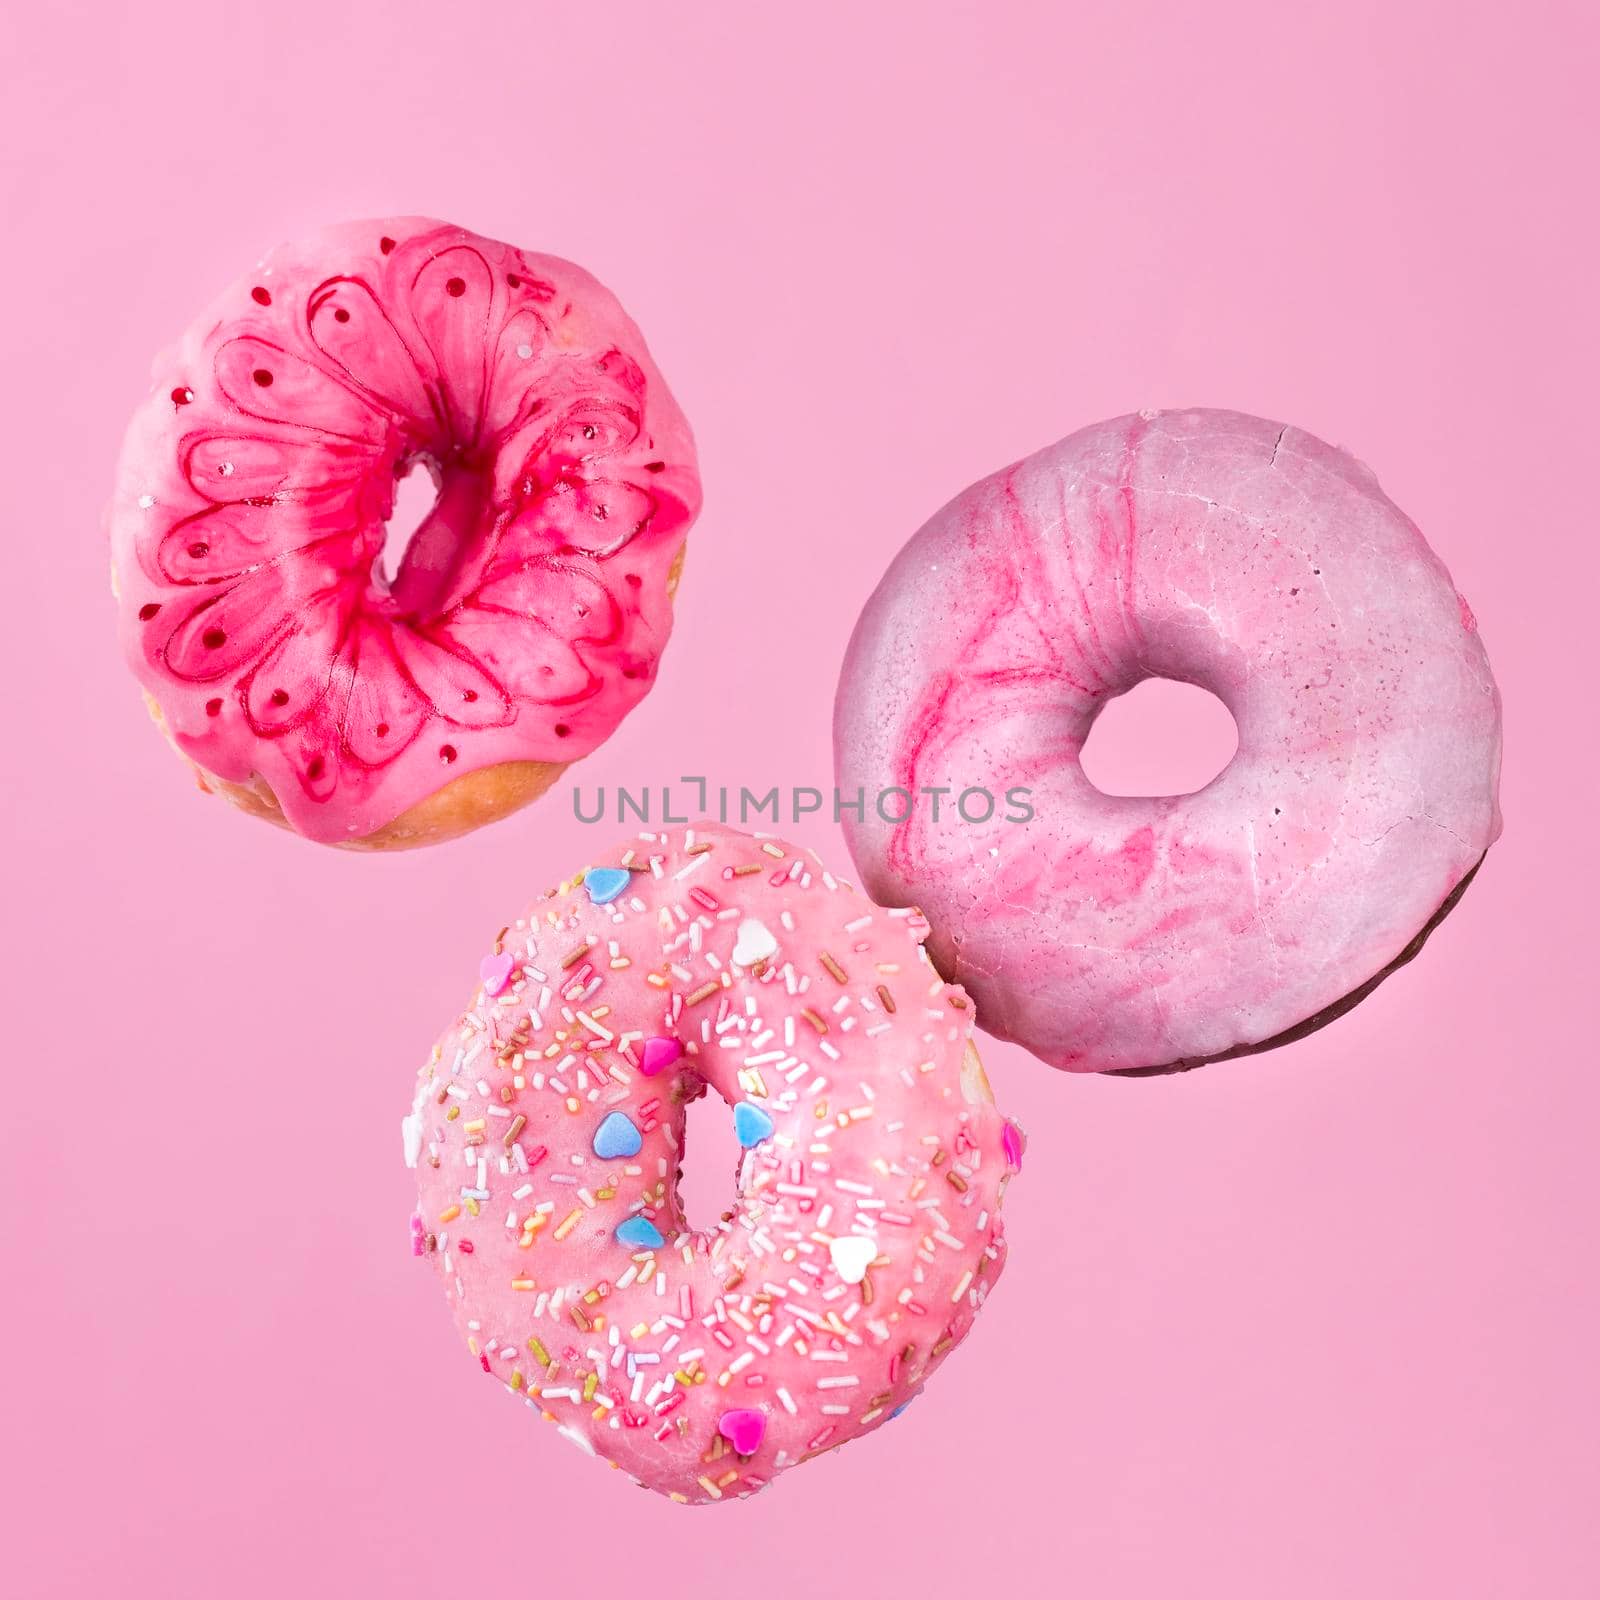 glazed donuts motion. High quality photo by Zahard